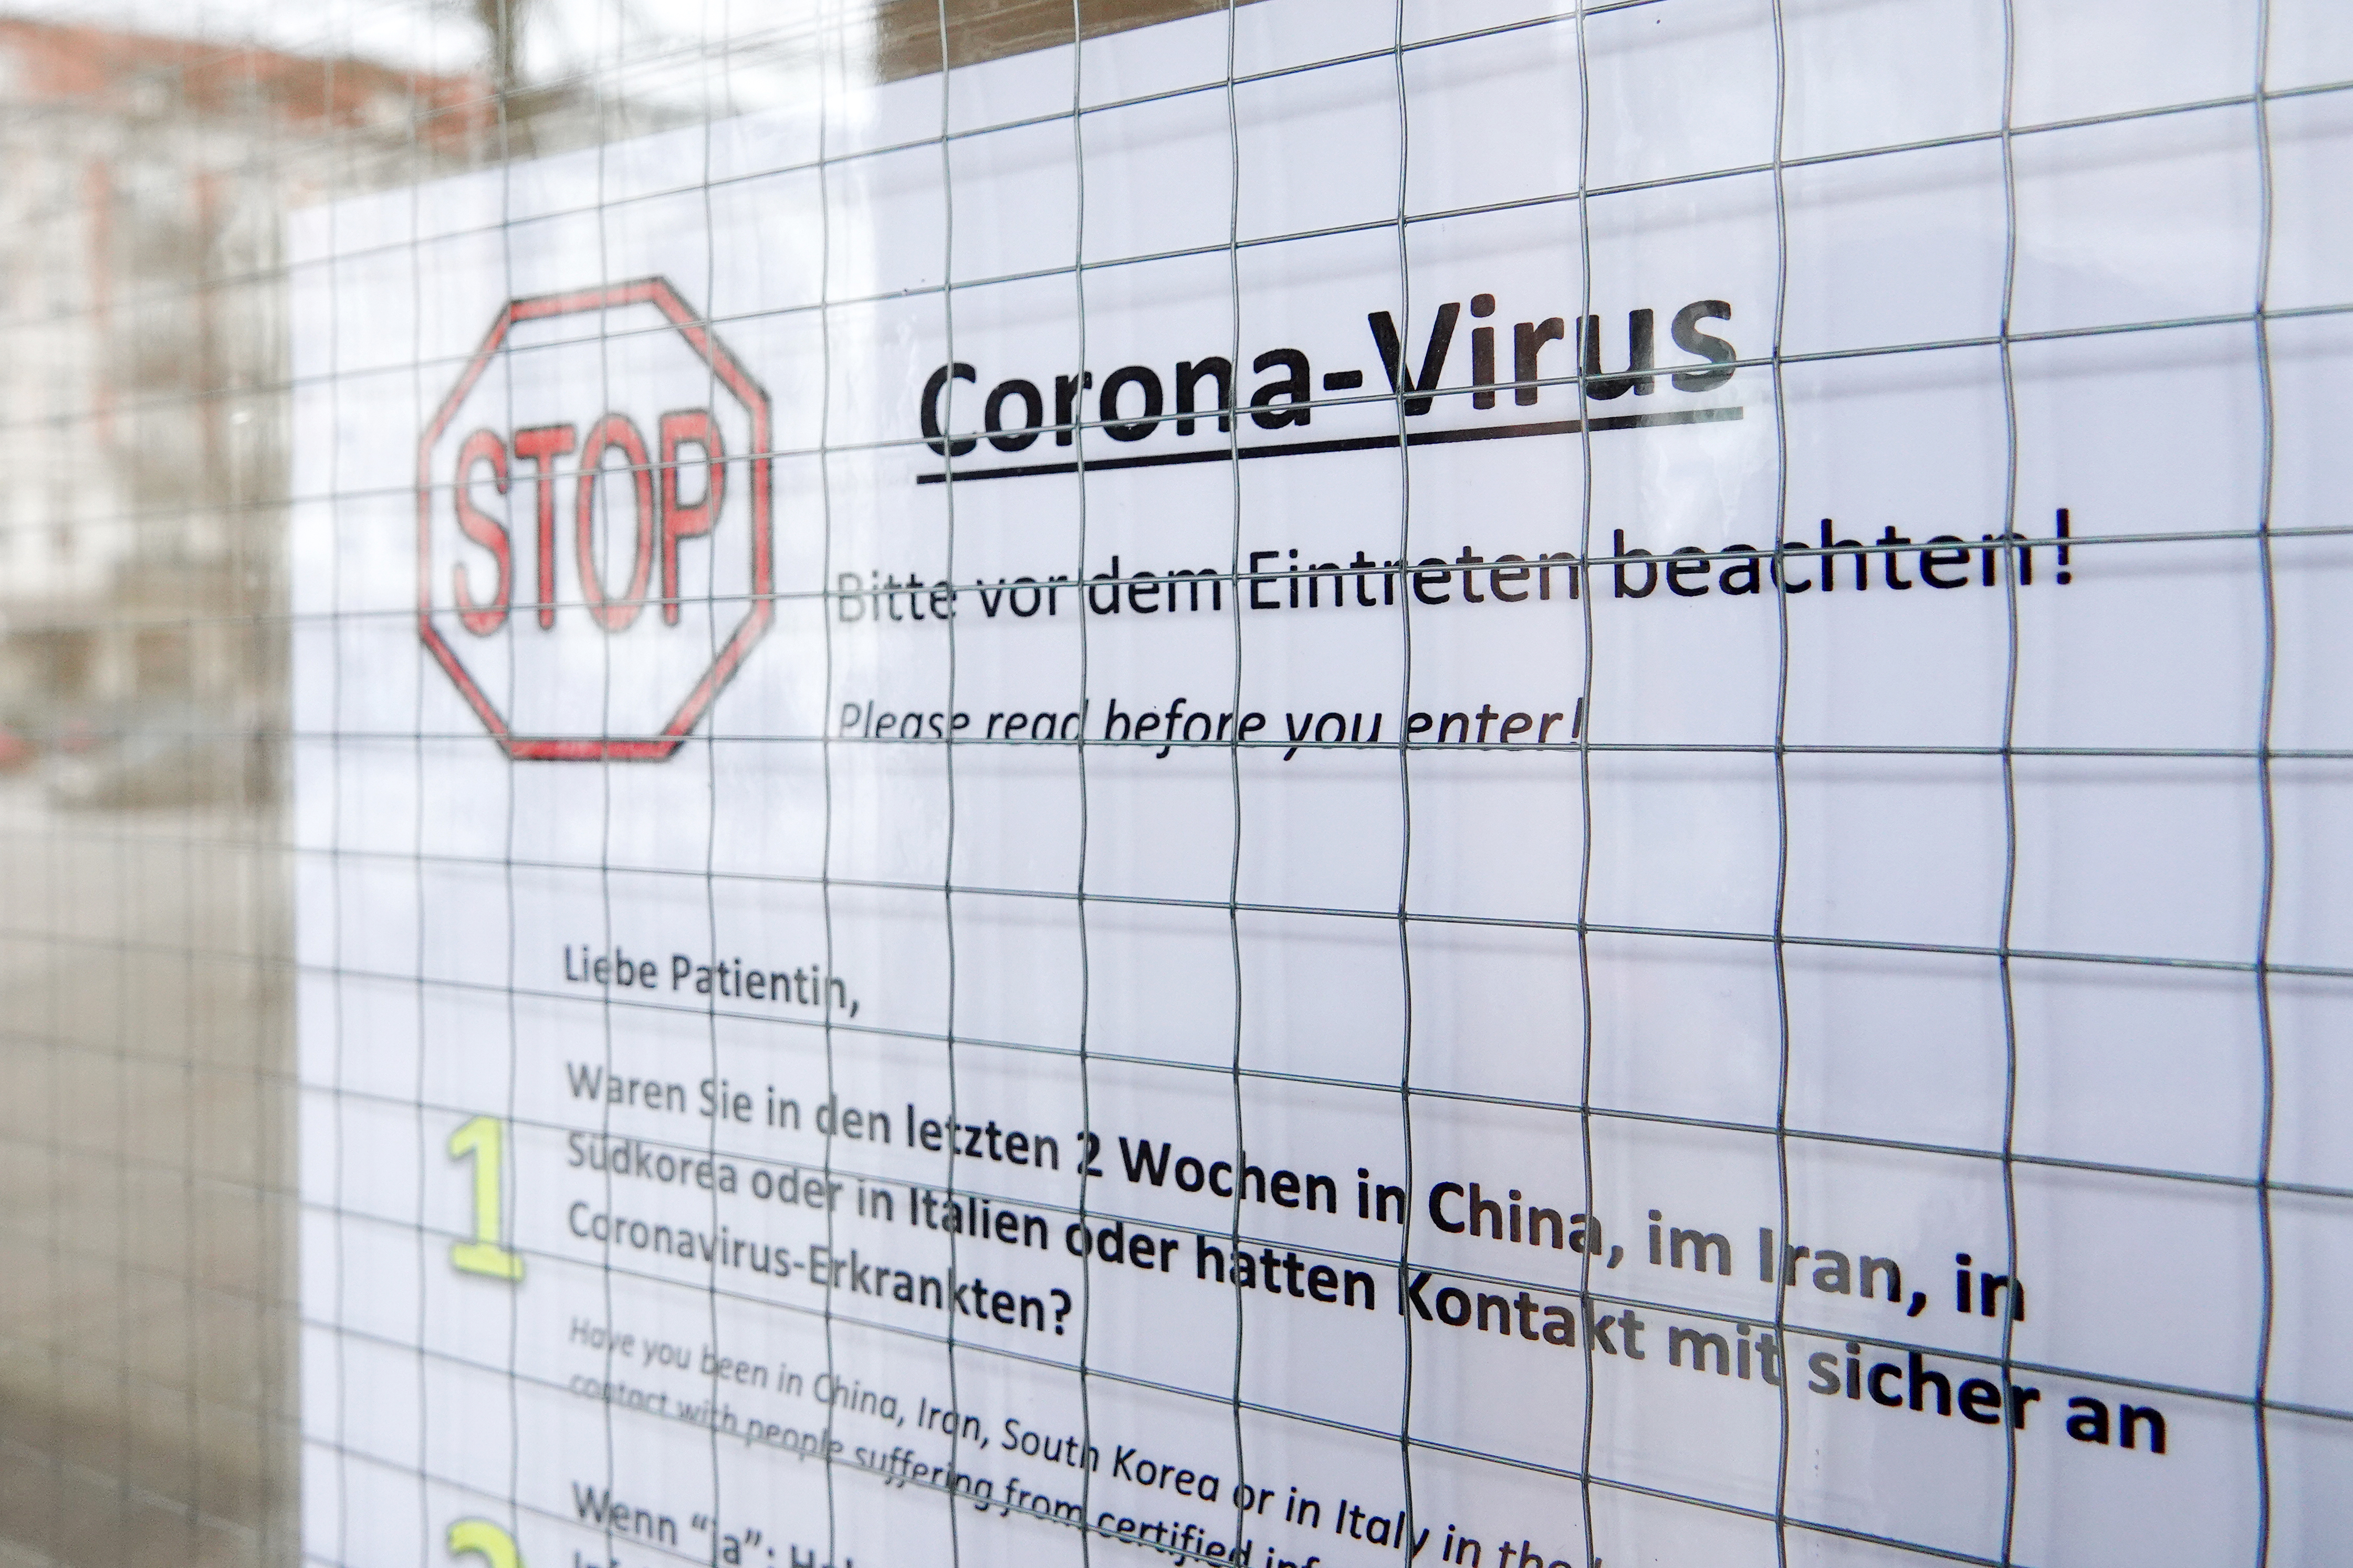 Németországban is tovább terjedt a koronavírus